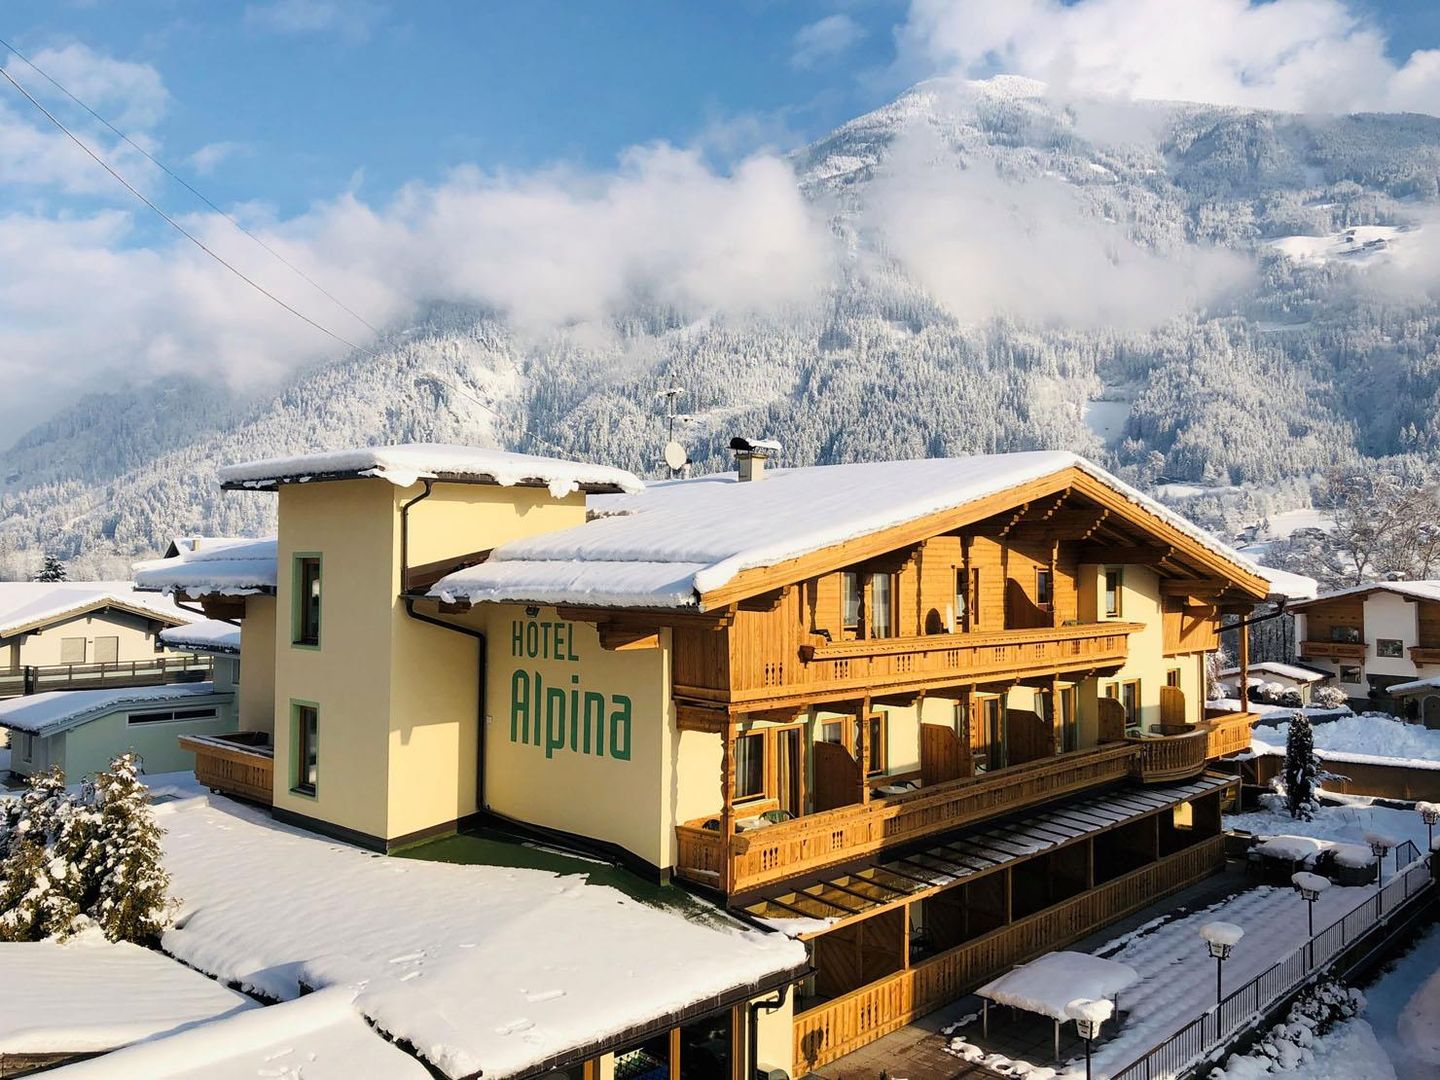 Hotel Alpina - Slide 1